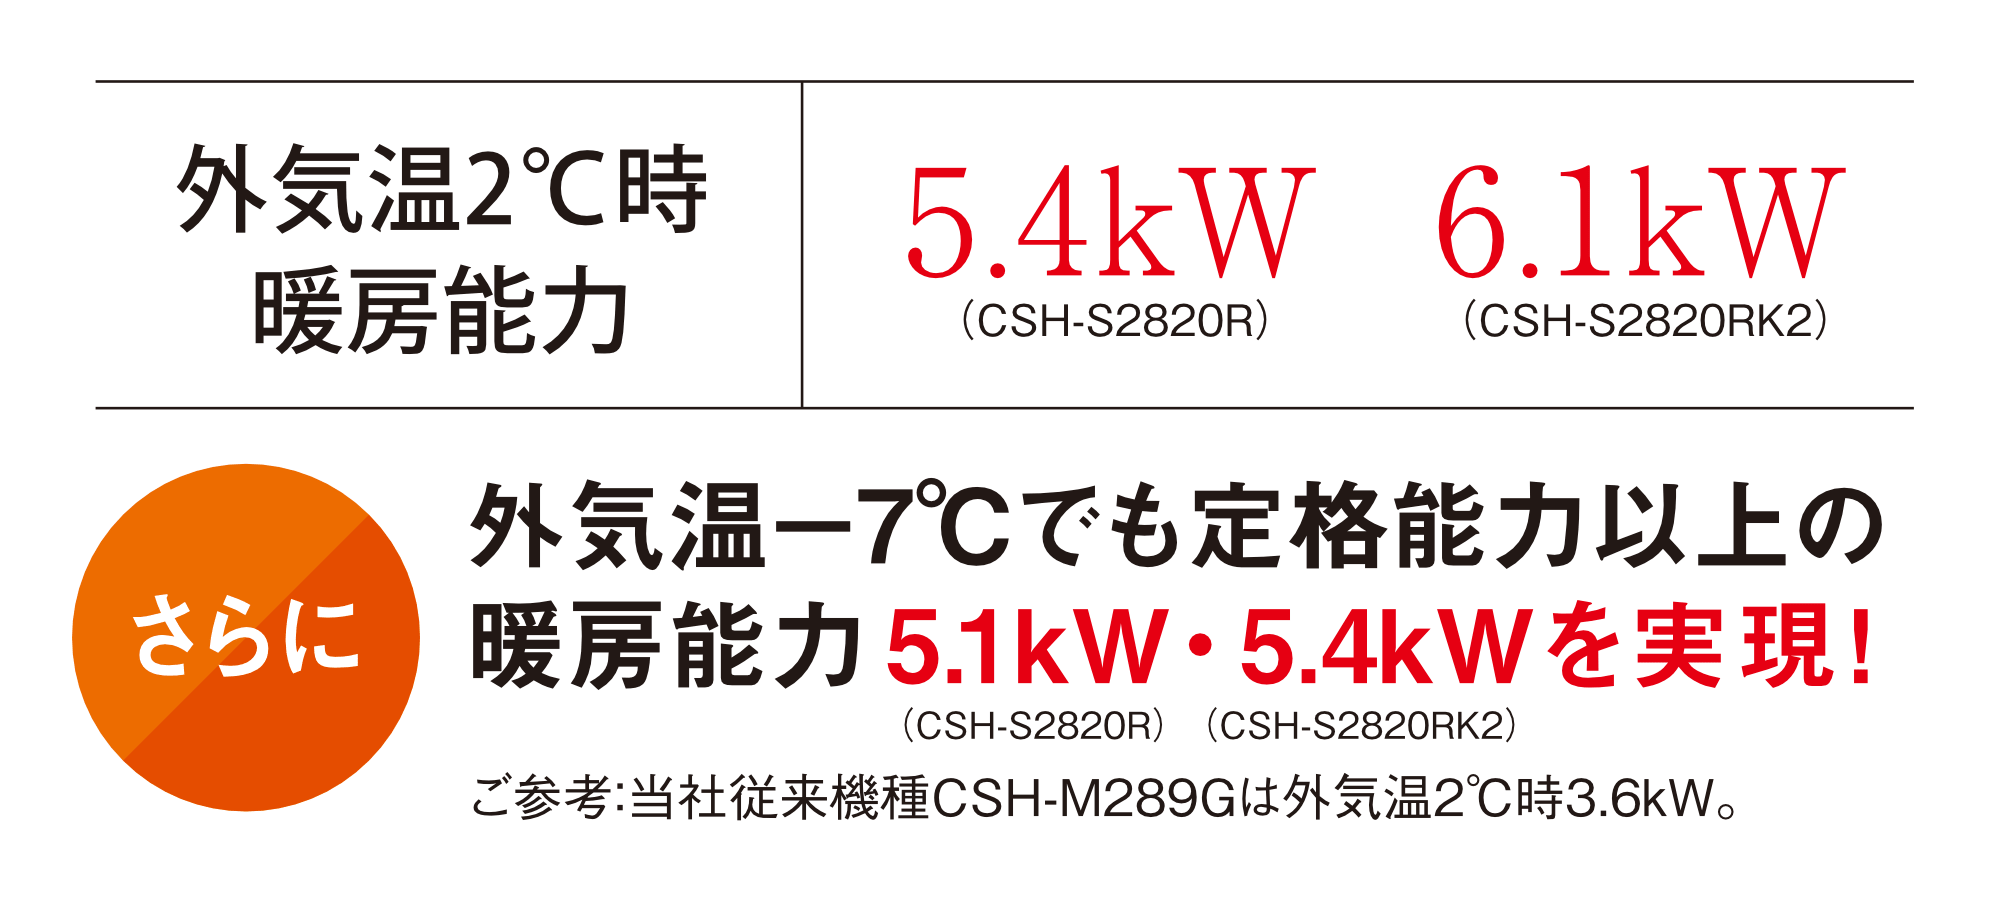 外気温2°C時暖房能力 5.4kW(CSH-S2820R)/6.1kW(CSH-S2820RK2)さらに 外気温-7°Cでも定格能力以上の 暖房能力5.1kW(CSH-S2820R)・5.4kW(CSH-S2820RK2)を実現!・ご参考:当社従来機種CSH-M289Gは外気温2°C時3.6kW。